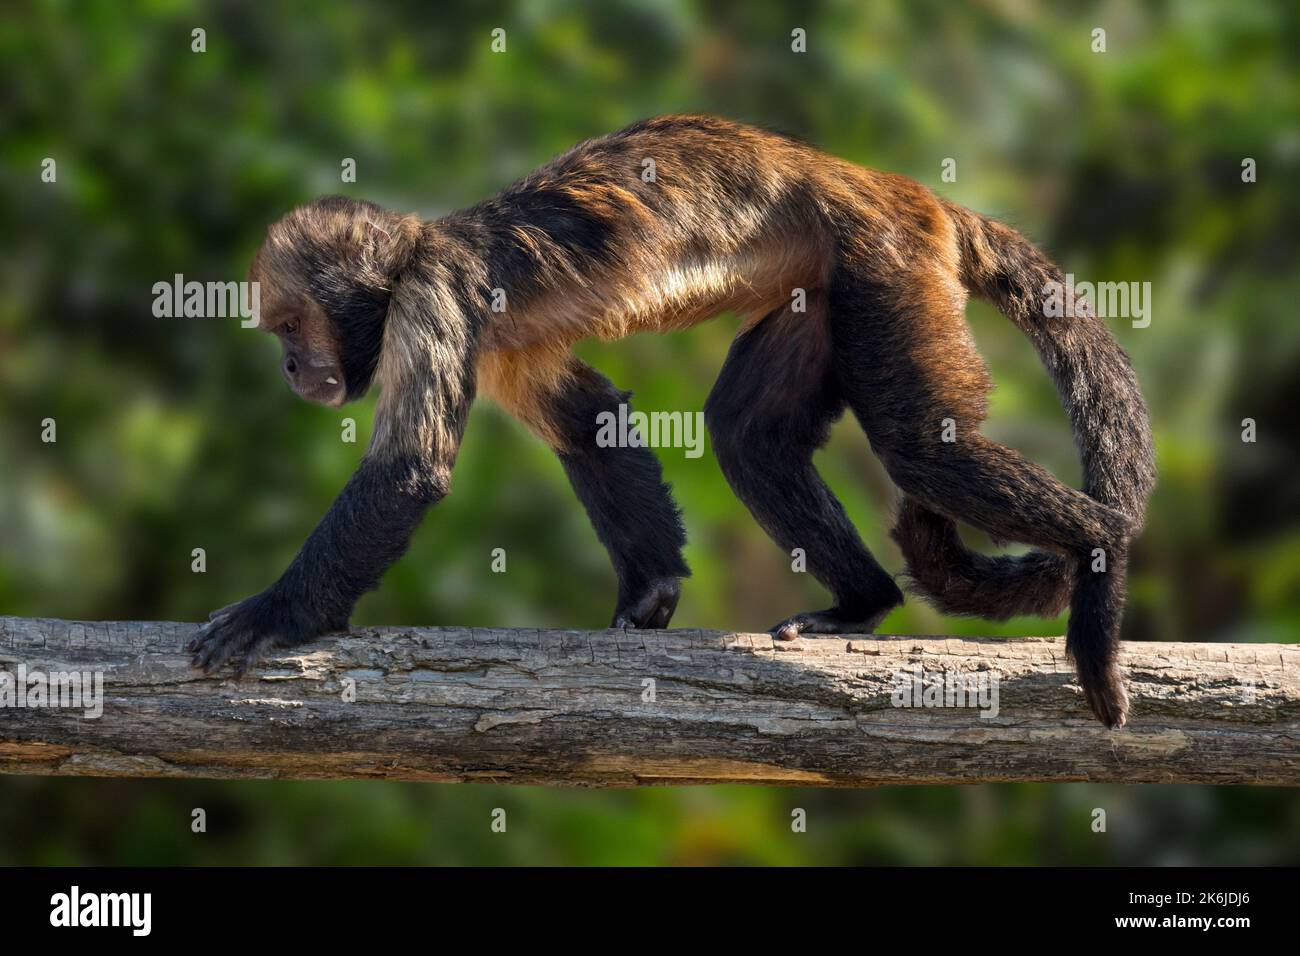 Capuchin à ventre doré / Capuchin à poitrine jaune / Capuchin à tête de chamois (Sapajus xanthosternos), espèce de singe du Nouveau monde originaire du Brésil, Amérique du Sud Banque D'Images